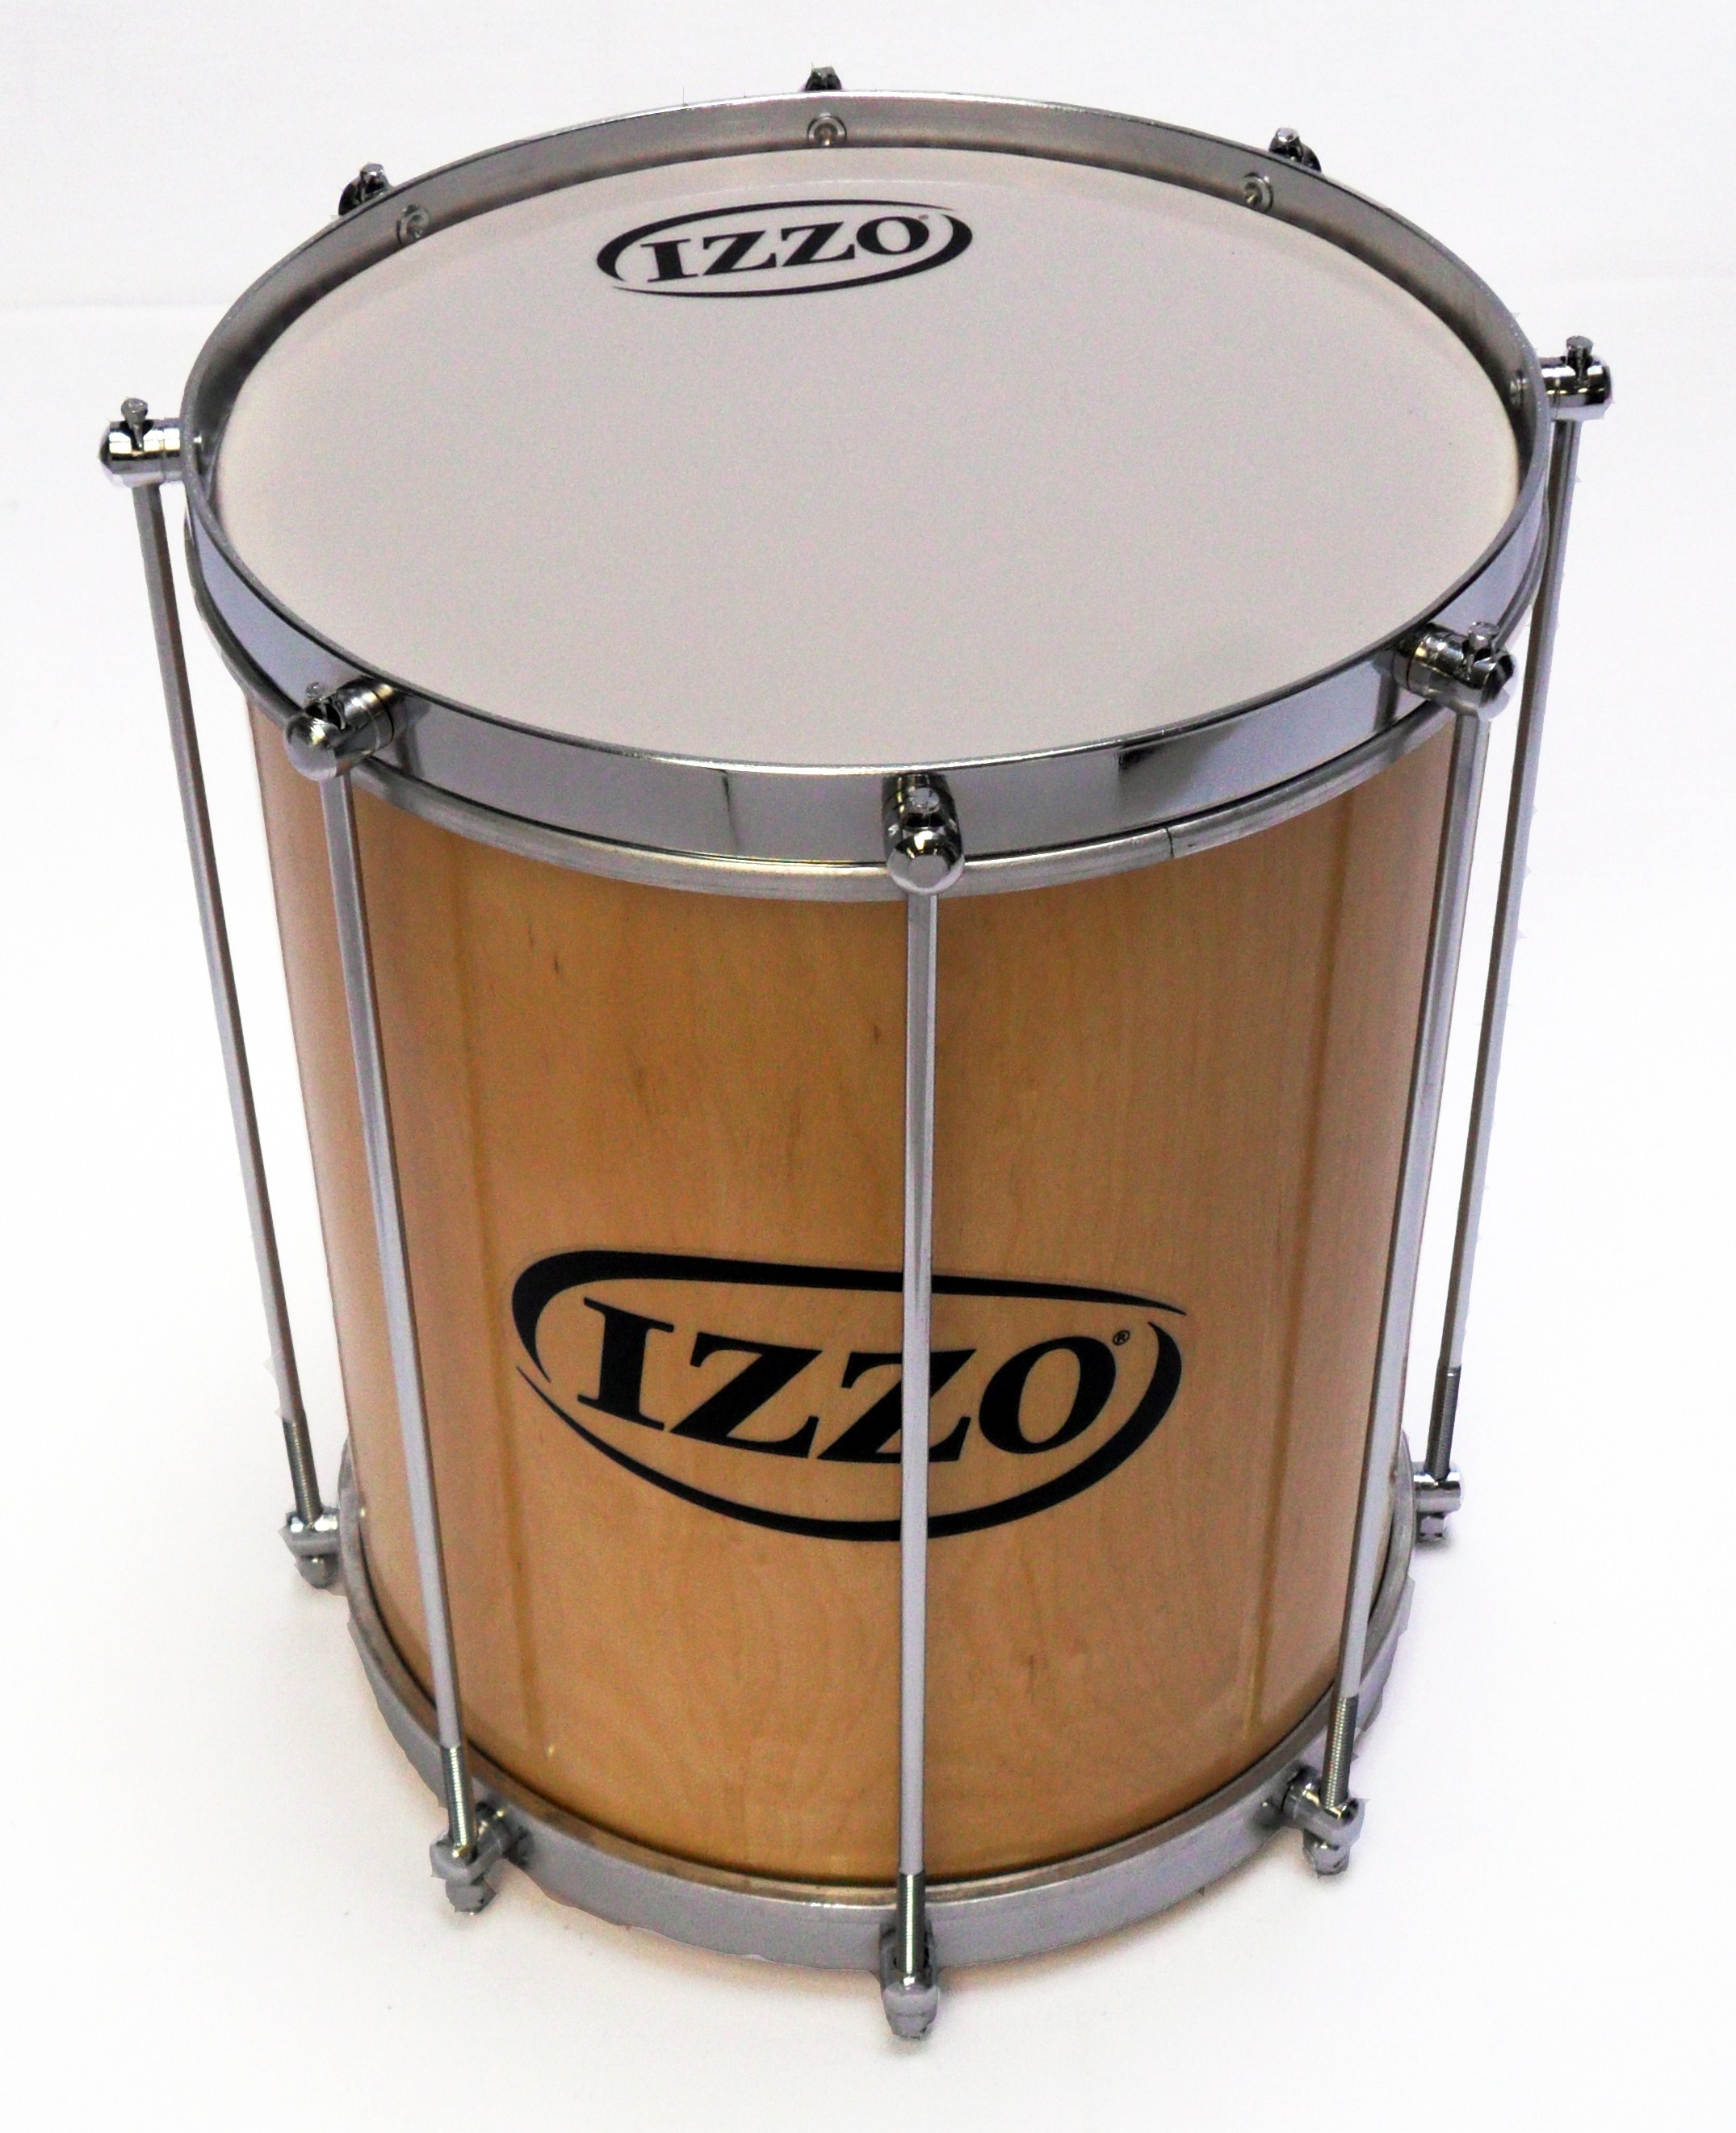 Izzo Percusion Brasil IZ13-10 parche repenique color estándar